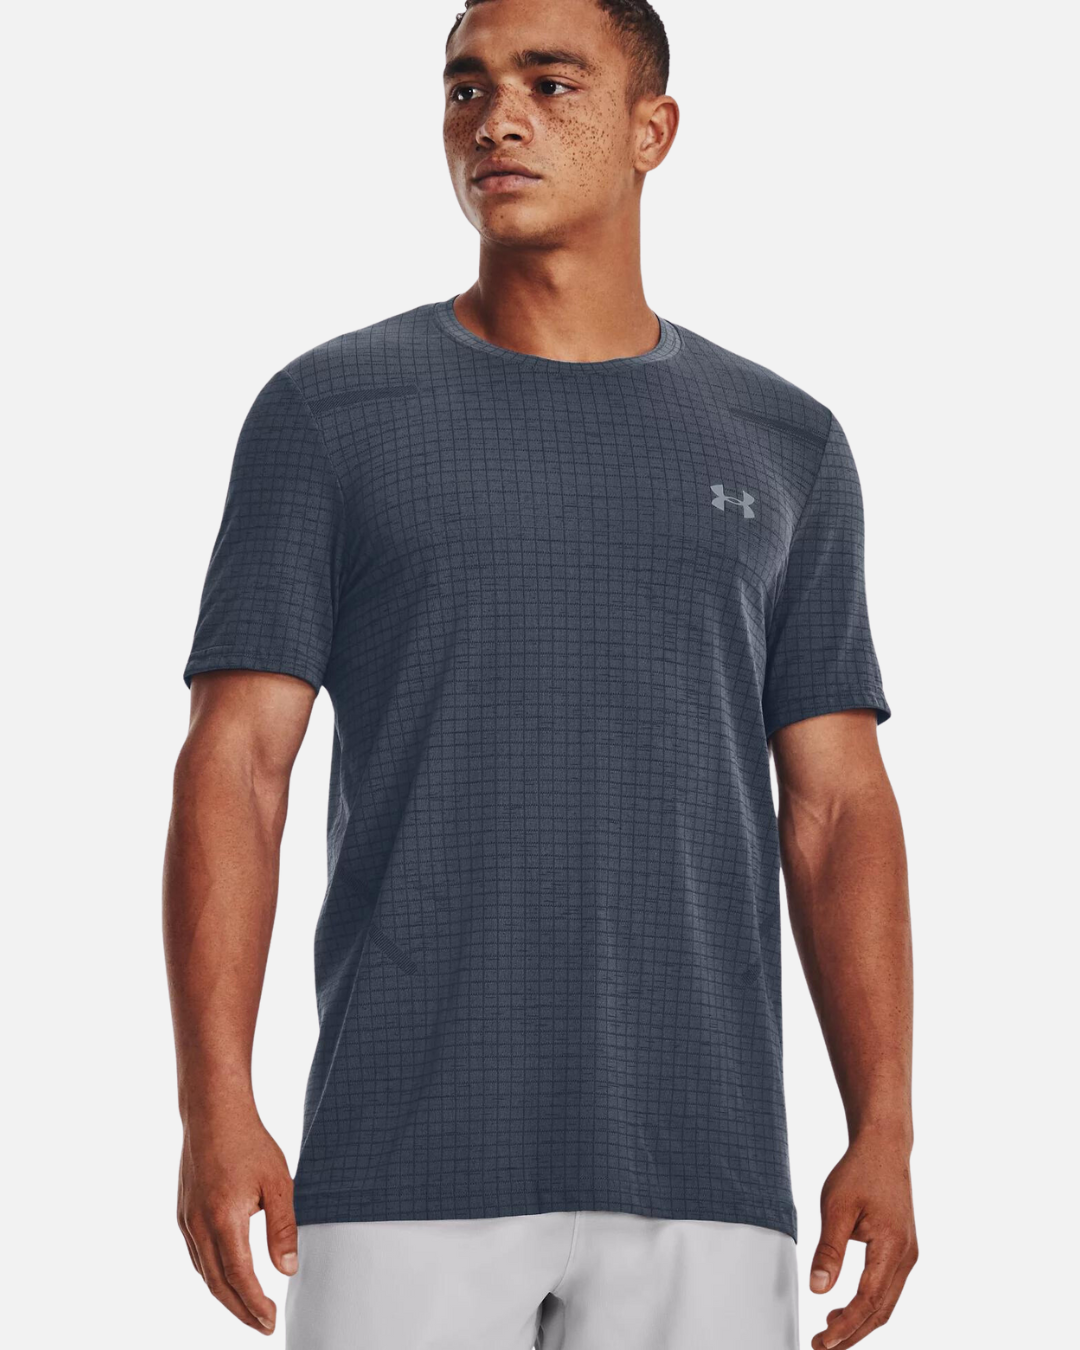 T-Shirt Under Armour Seamless Grid - Grau